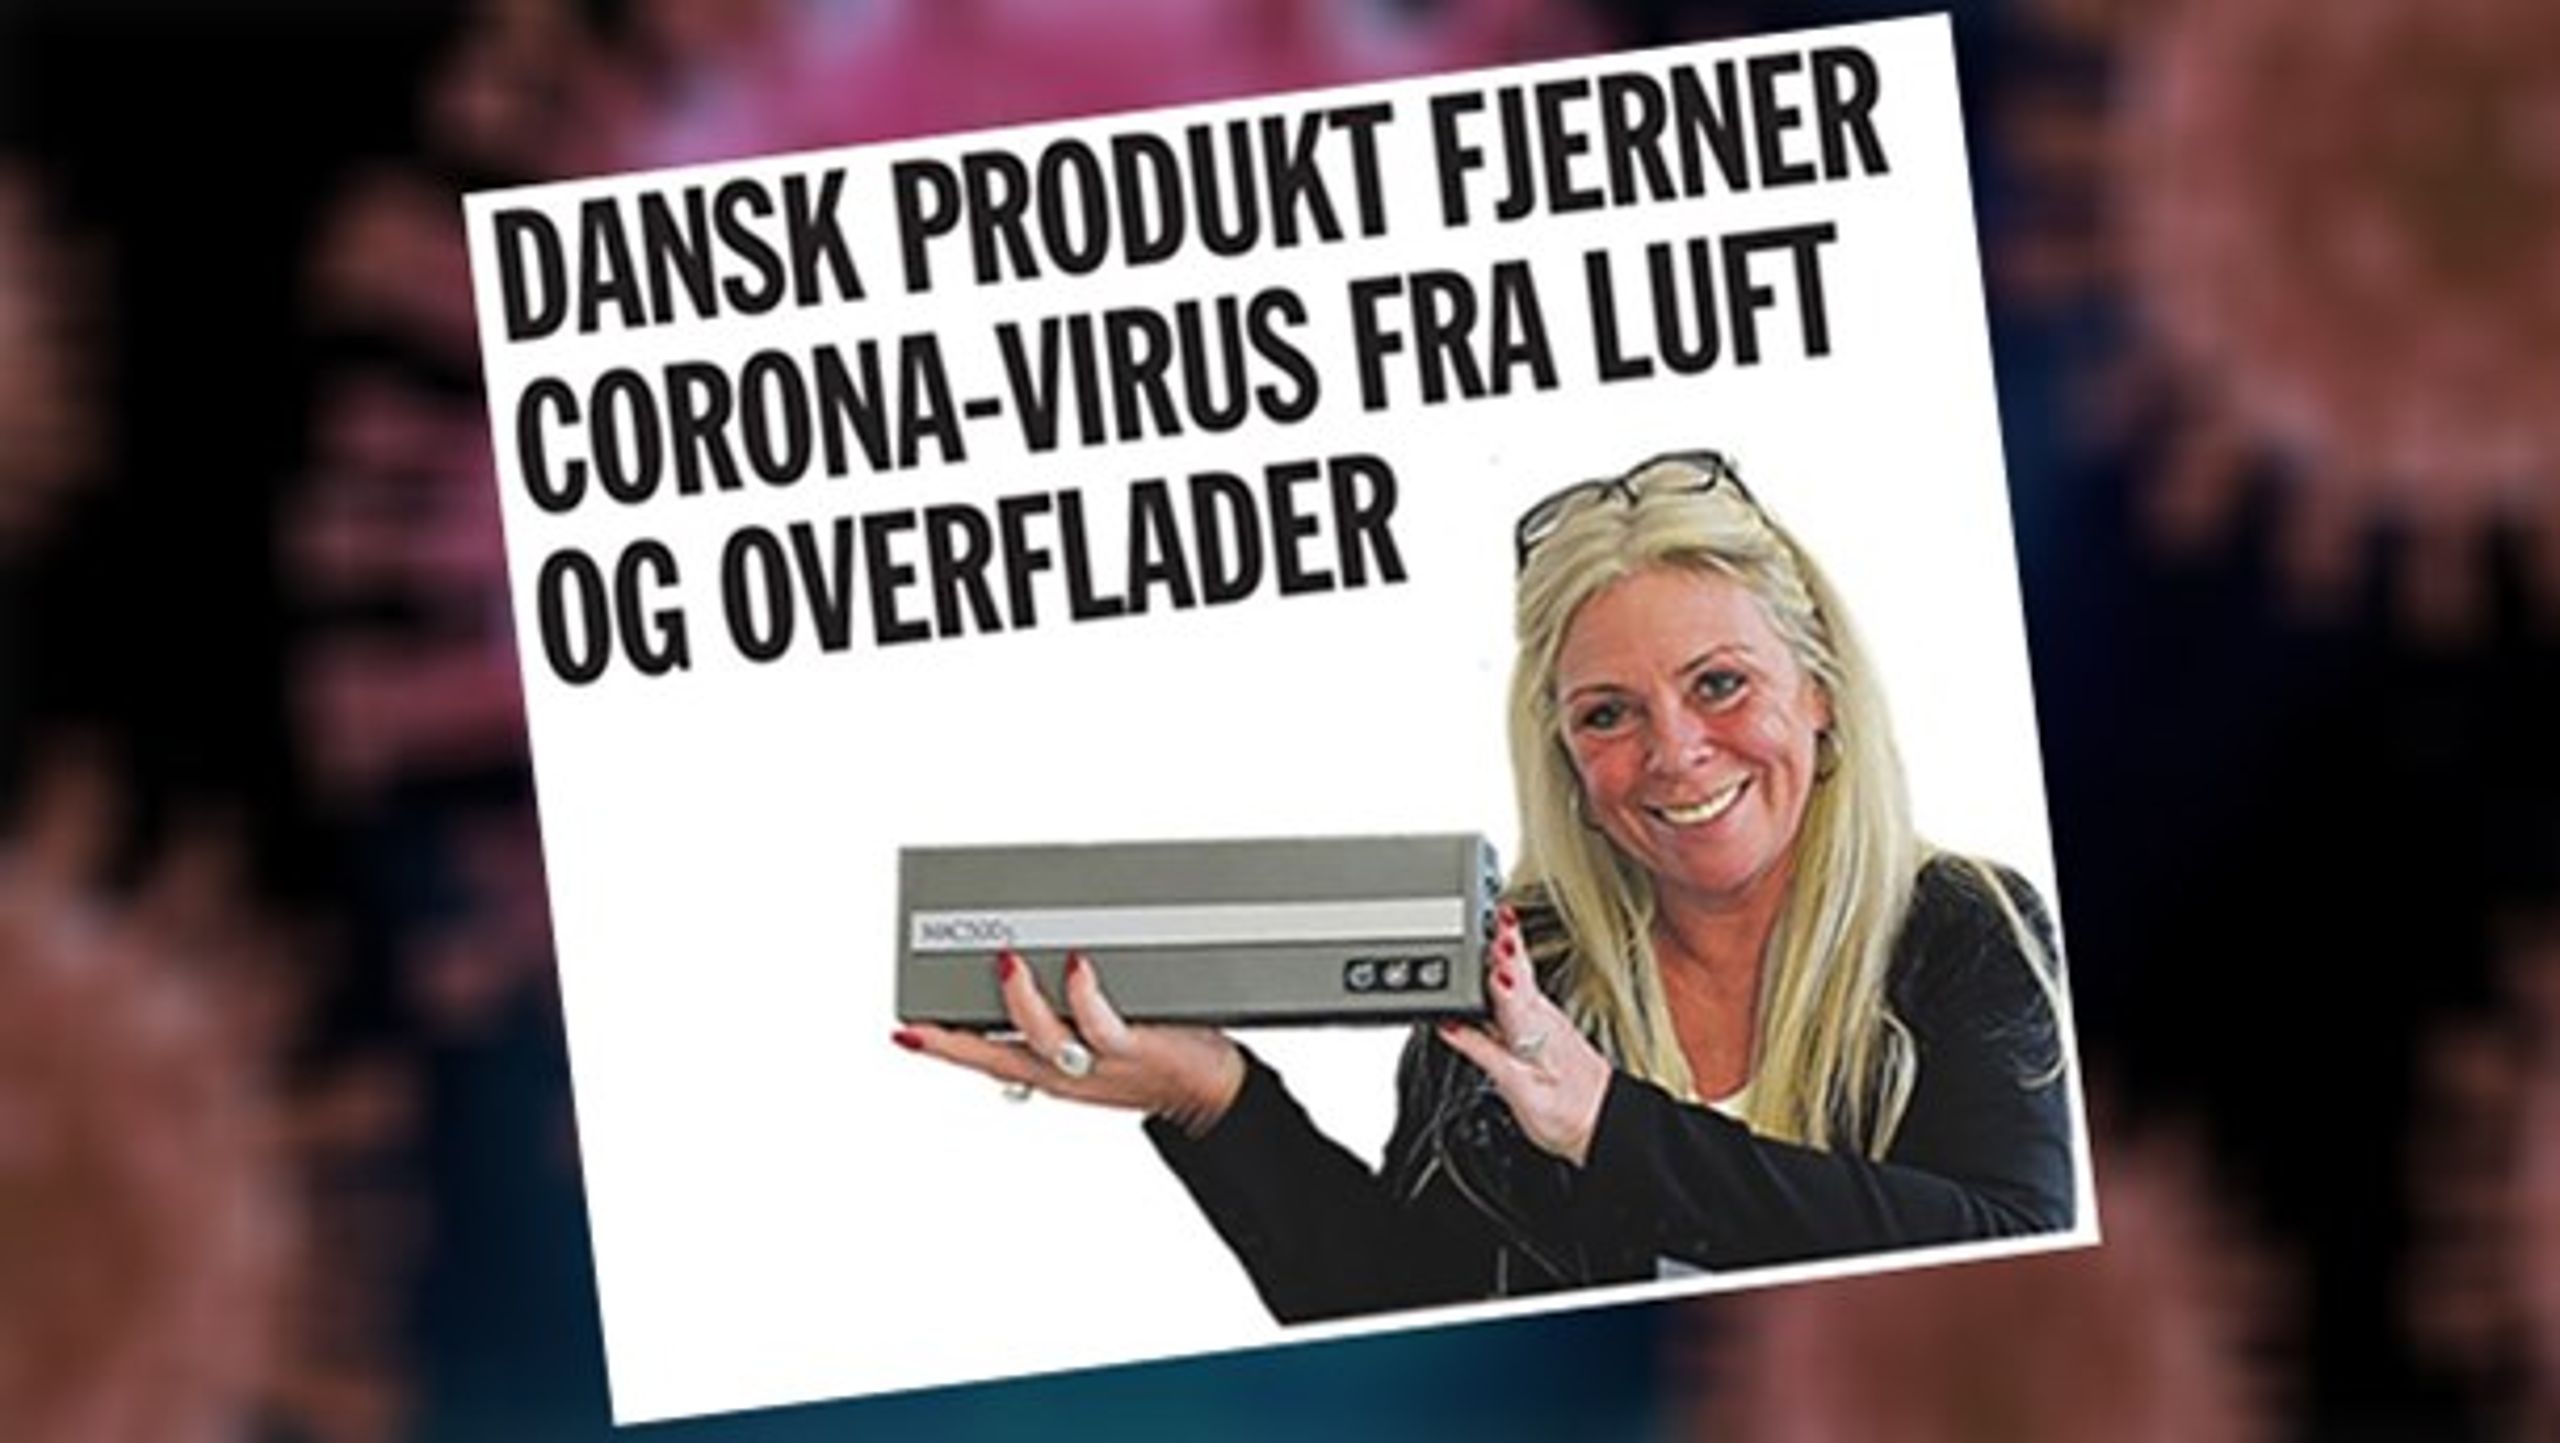 <div>Dansk produkt fjerner coronavirus fra luft og overflader, lover virksomhed i annonce i Politiken.&nbsp;Forskere er skeptiske, og firmaet kan ikke dokumentere, at luftrenseren fanger den nye coronavirus, der hærger lande verden over i disse måneder.</div>